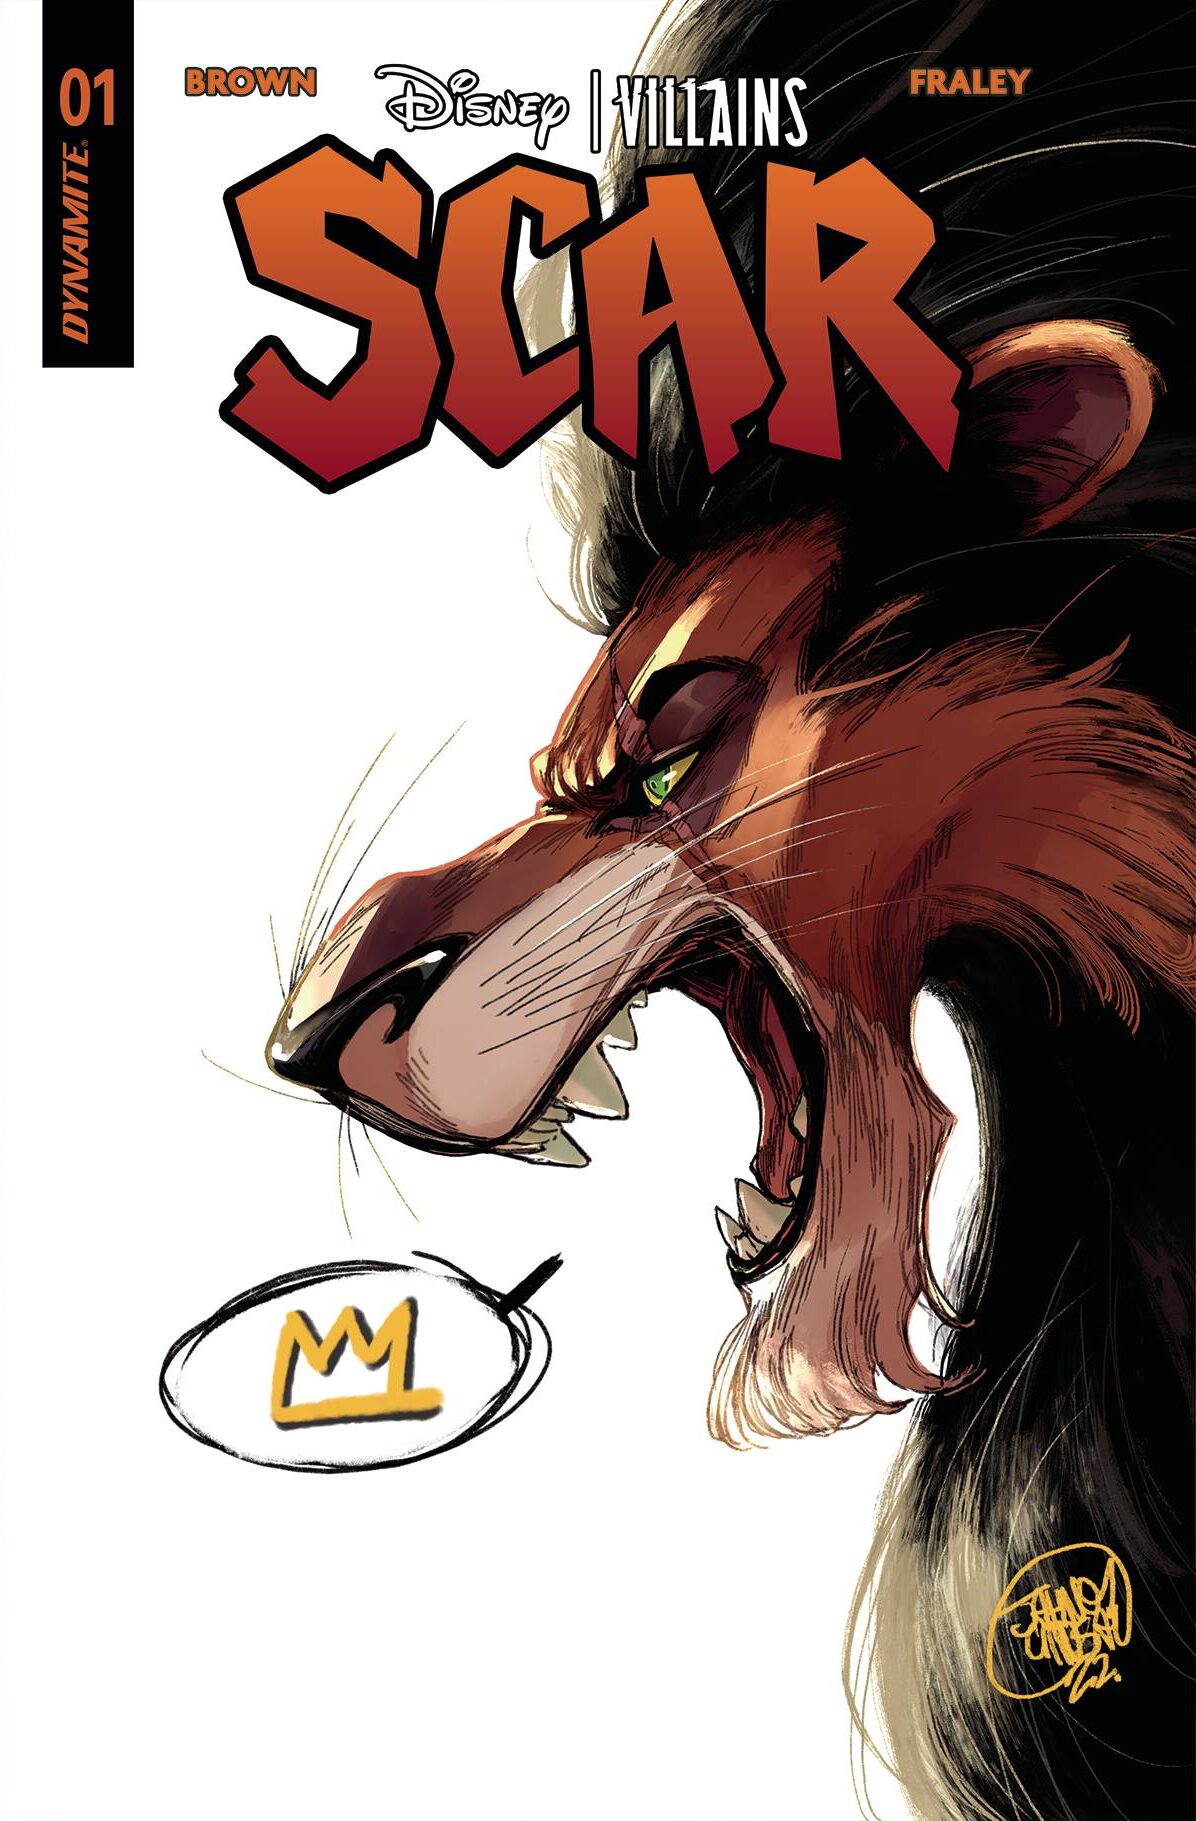 DISNEY VILLAINS SCAR #1 A Lion King